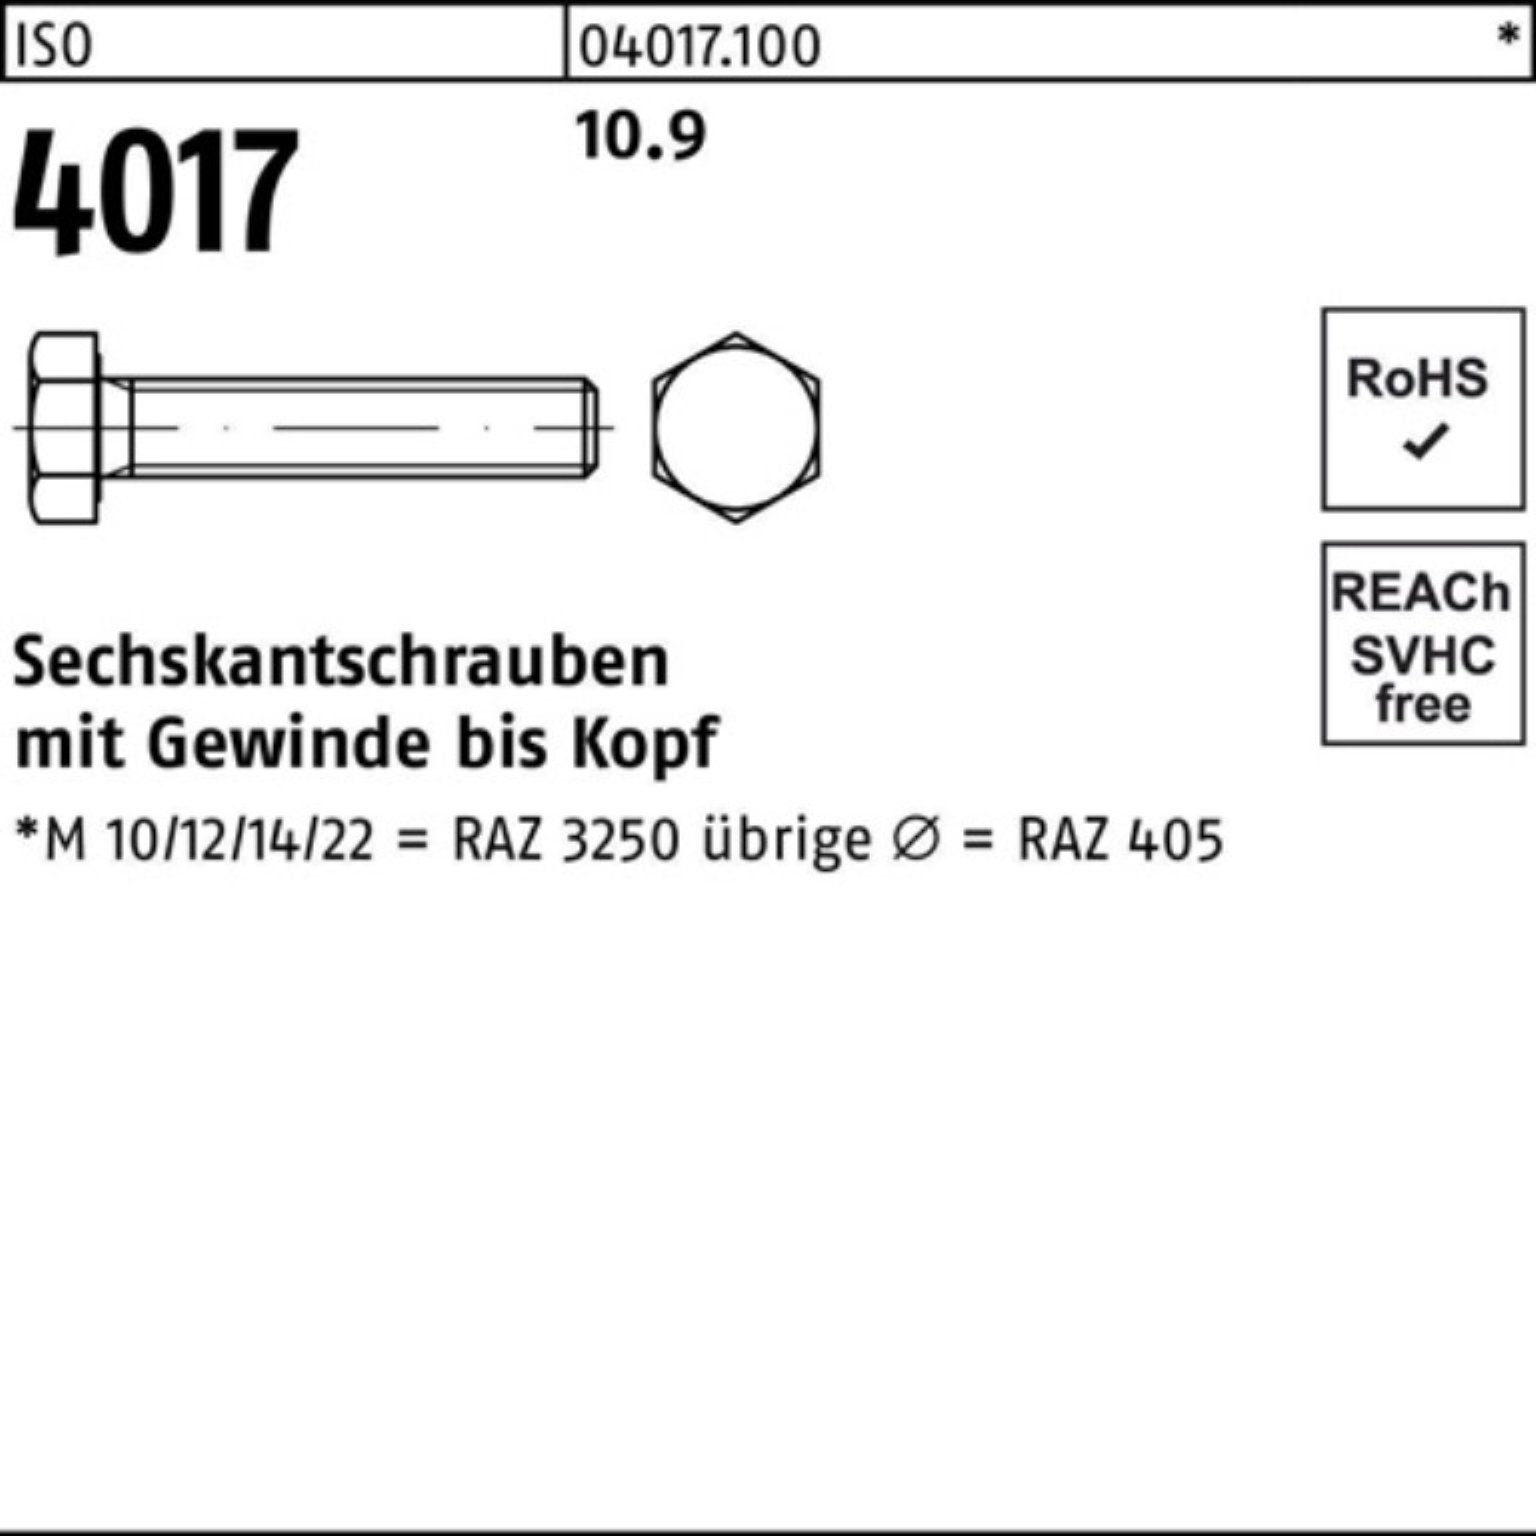 Sechskantschraube Pack 4017 ISO Bufab 100er 1 M24x Sechskantschraube 40 Stück VG 10.9 140 ISO